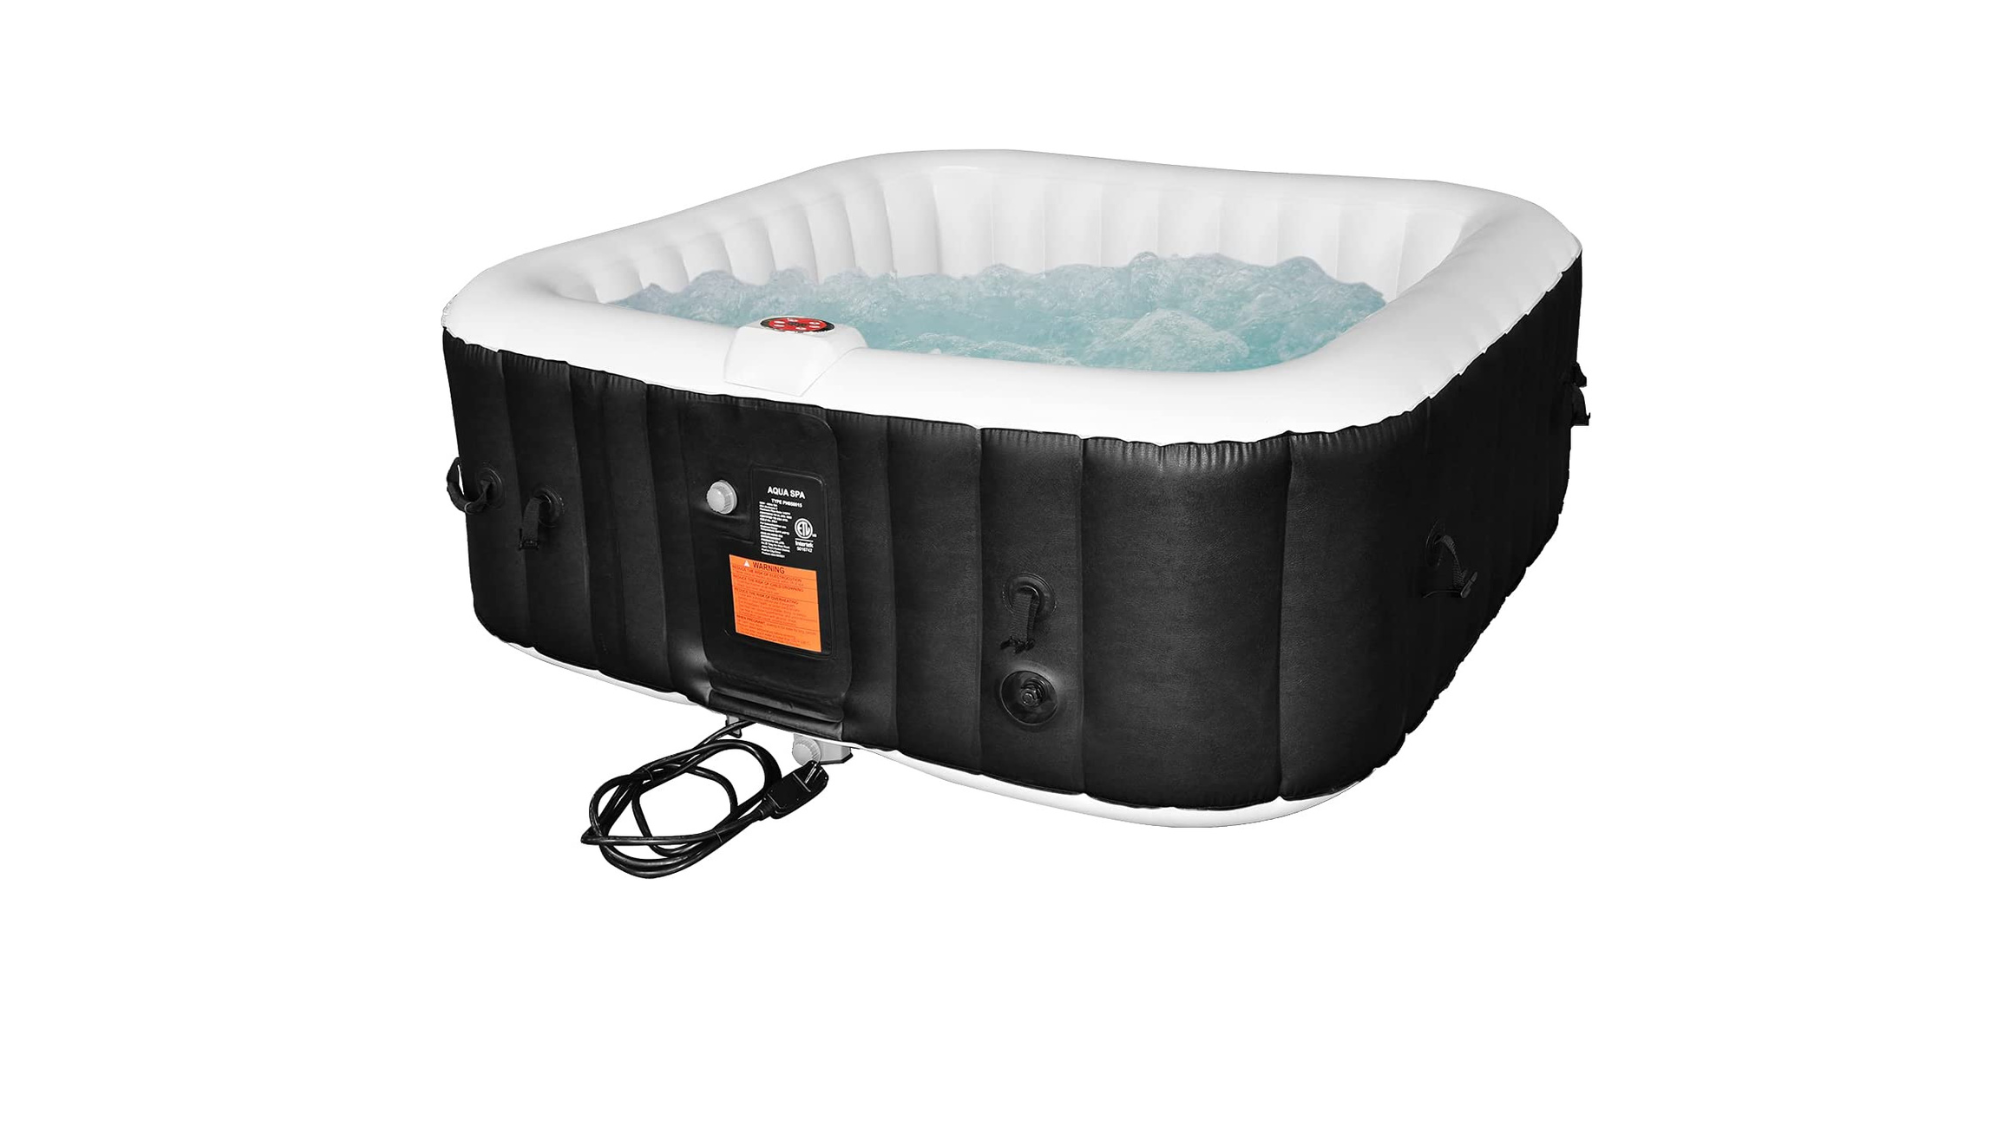 Black AquaSpa inflatable WEJOY hot tub on white background